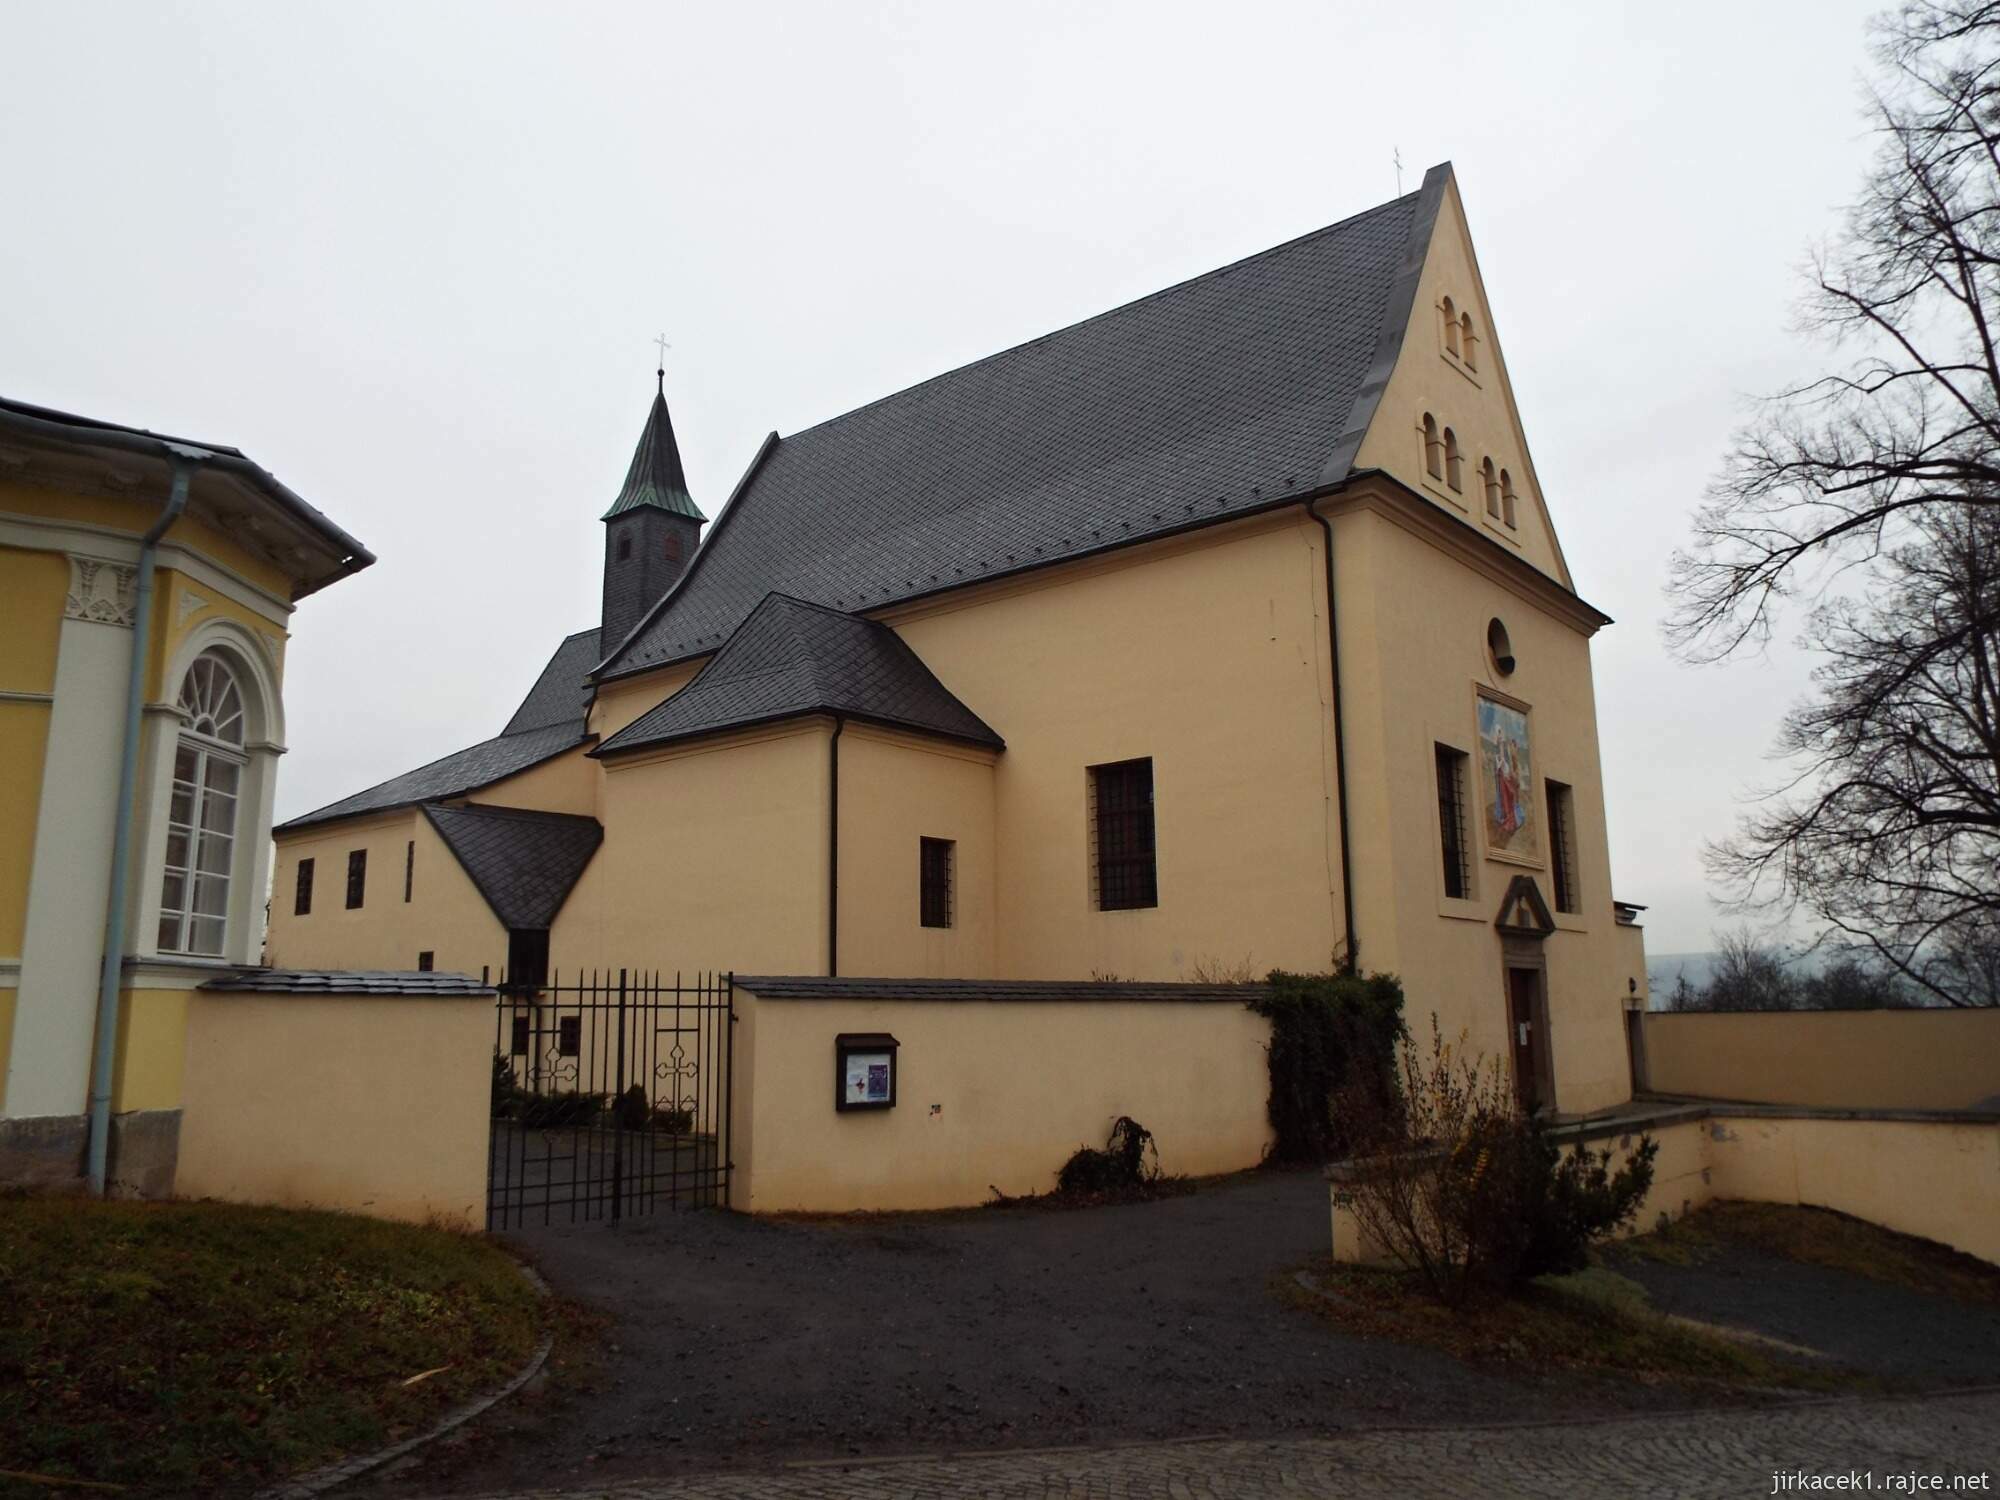 C - Fulnek - kostel sv. Josefa a kapucínský klášter 01 - celkový pohled na kostel